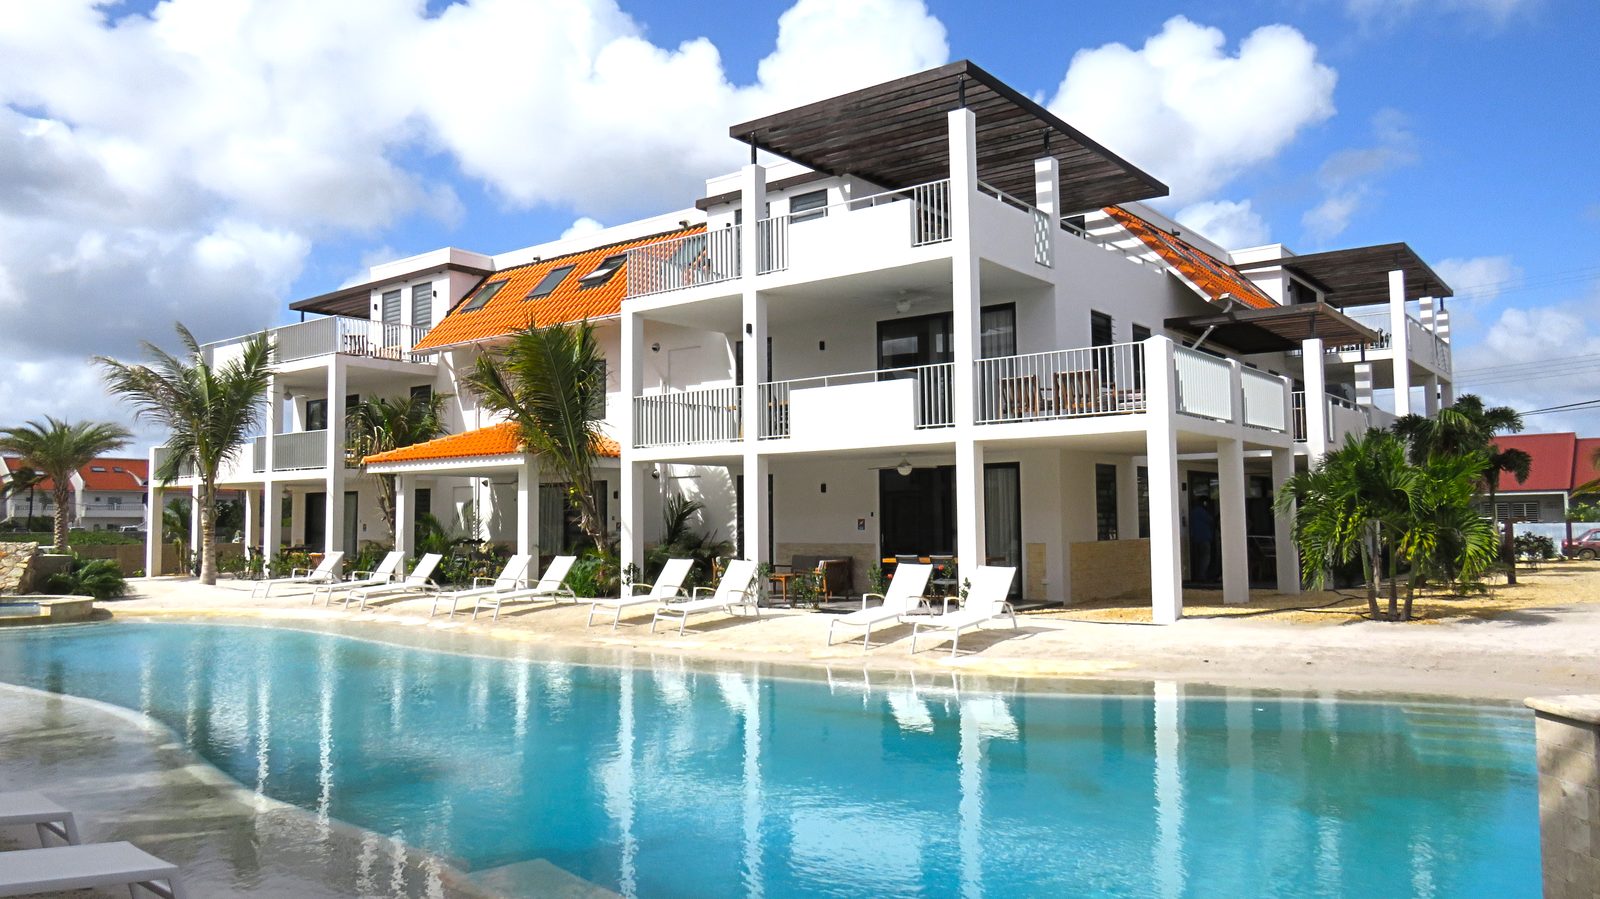 Procura uma estadia em Bonaire? Escolha o Resort Bonaire. Um novo e luxuoso resort com apartamentos que oferecem tudo o que precisa.